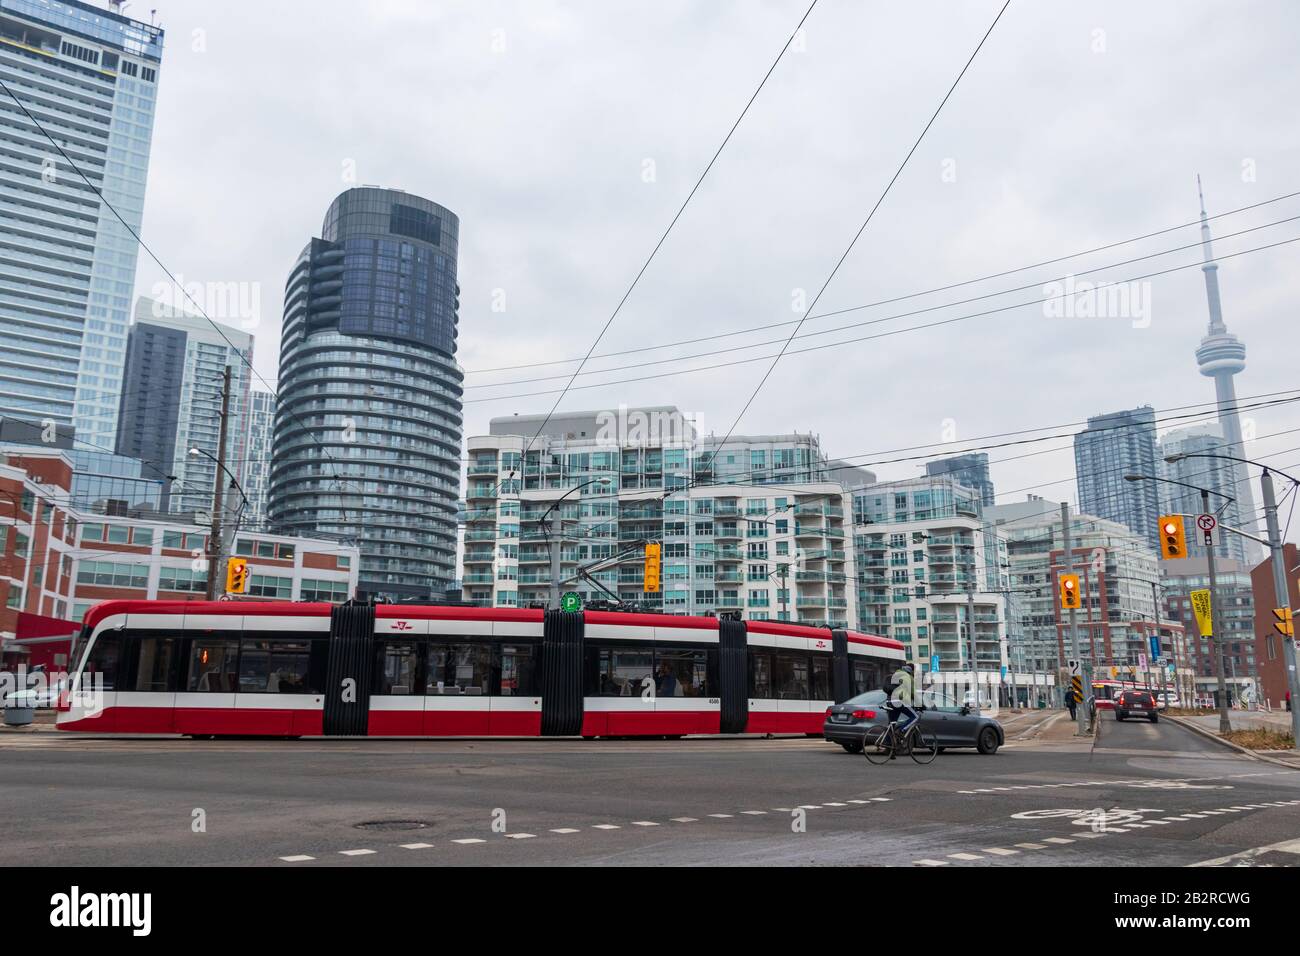 Un tramway Bombardier TTC est visible dans une rue animée de la ville avec les villes du centre-ville, la Tour CN en arrière-plan. Banque D'Images